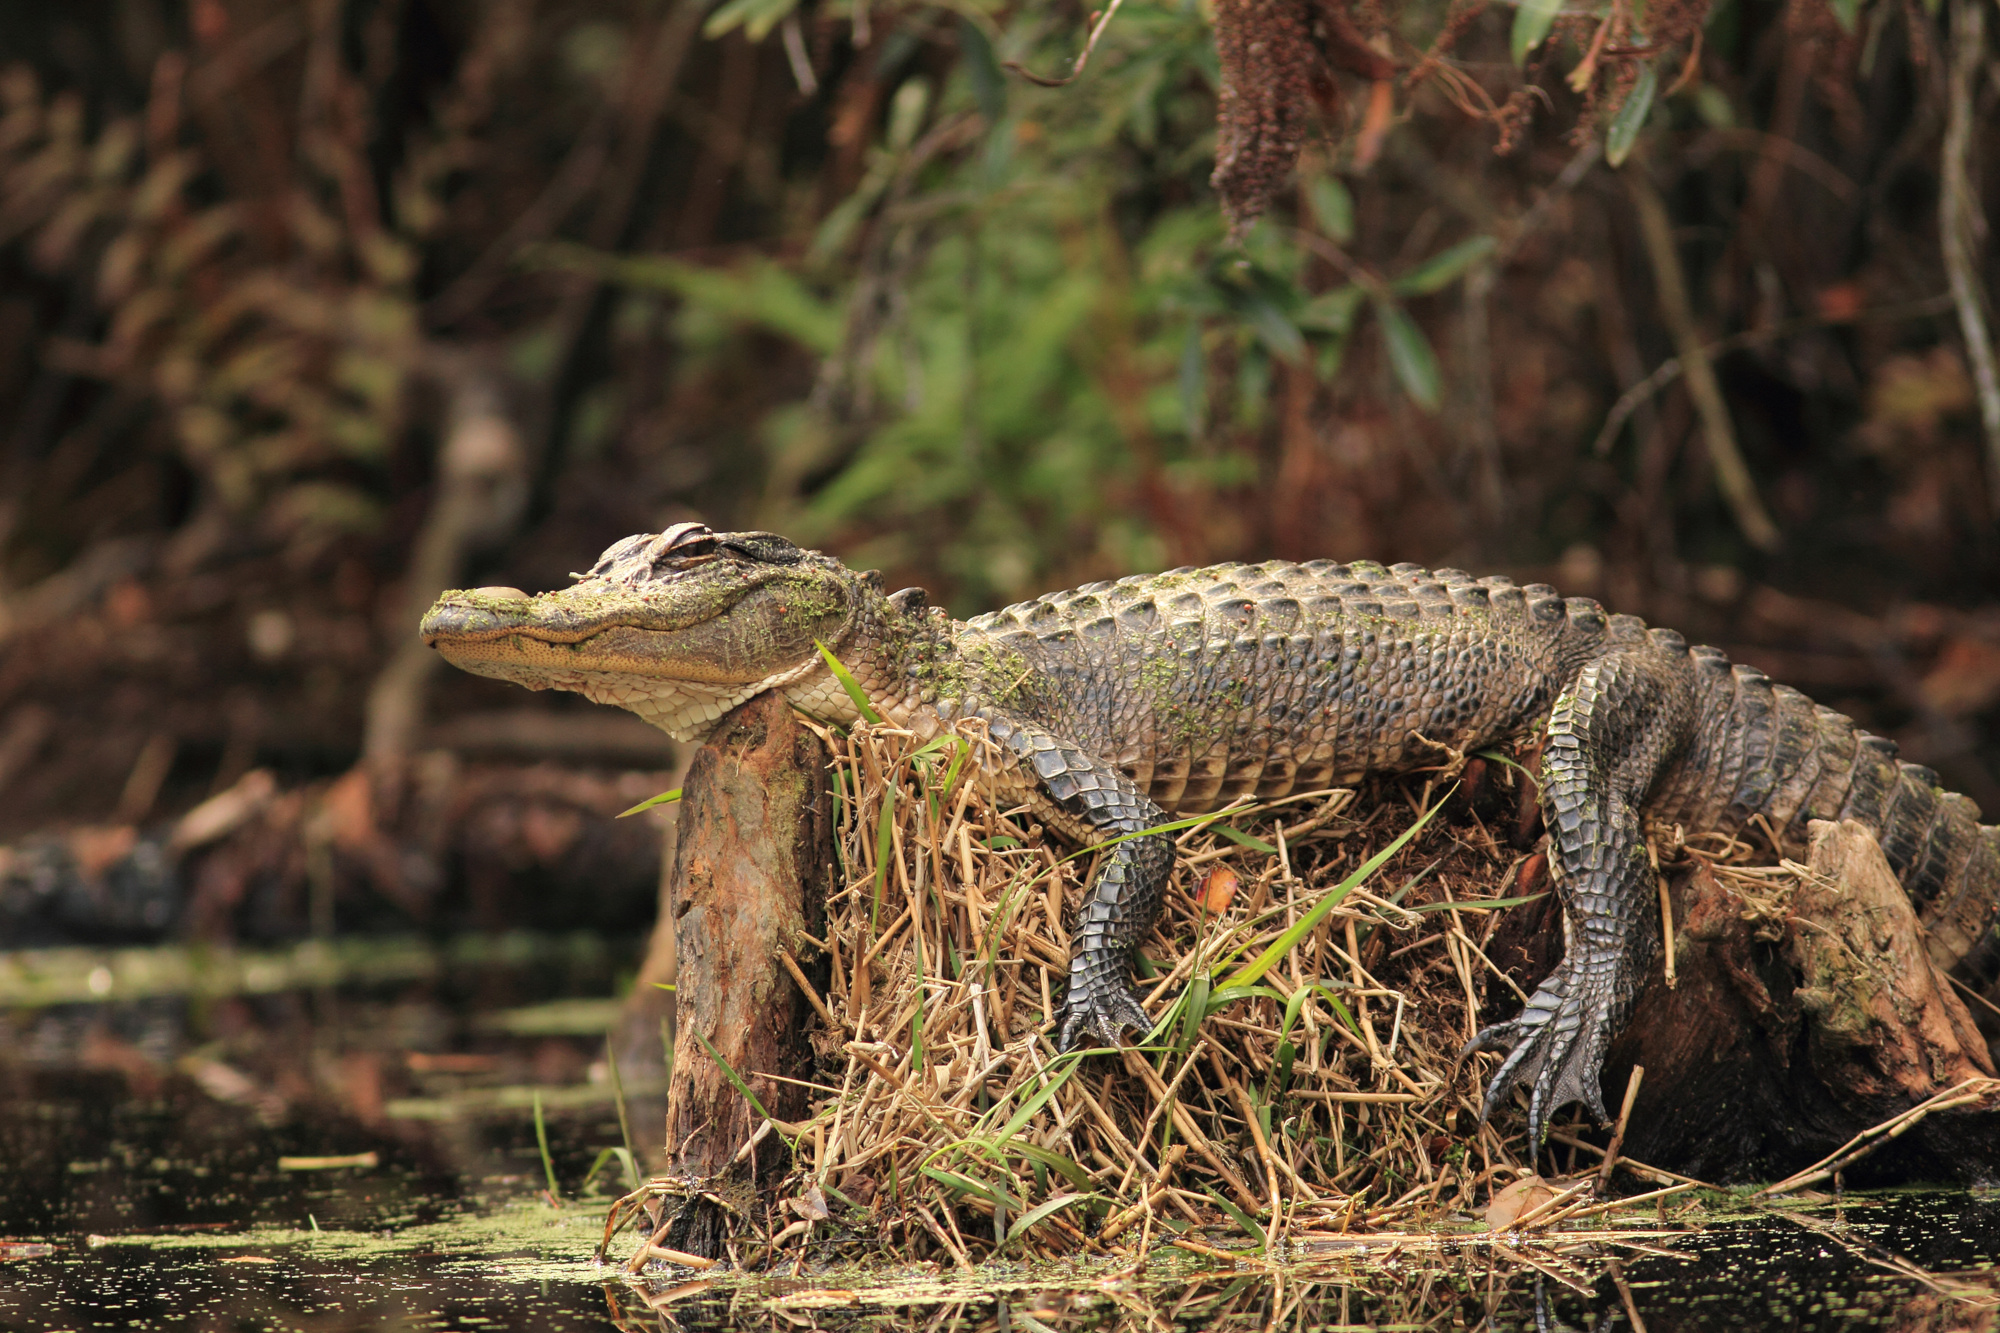 alligator-lounging-on-tree-stump-okefenokee-swamp